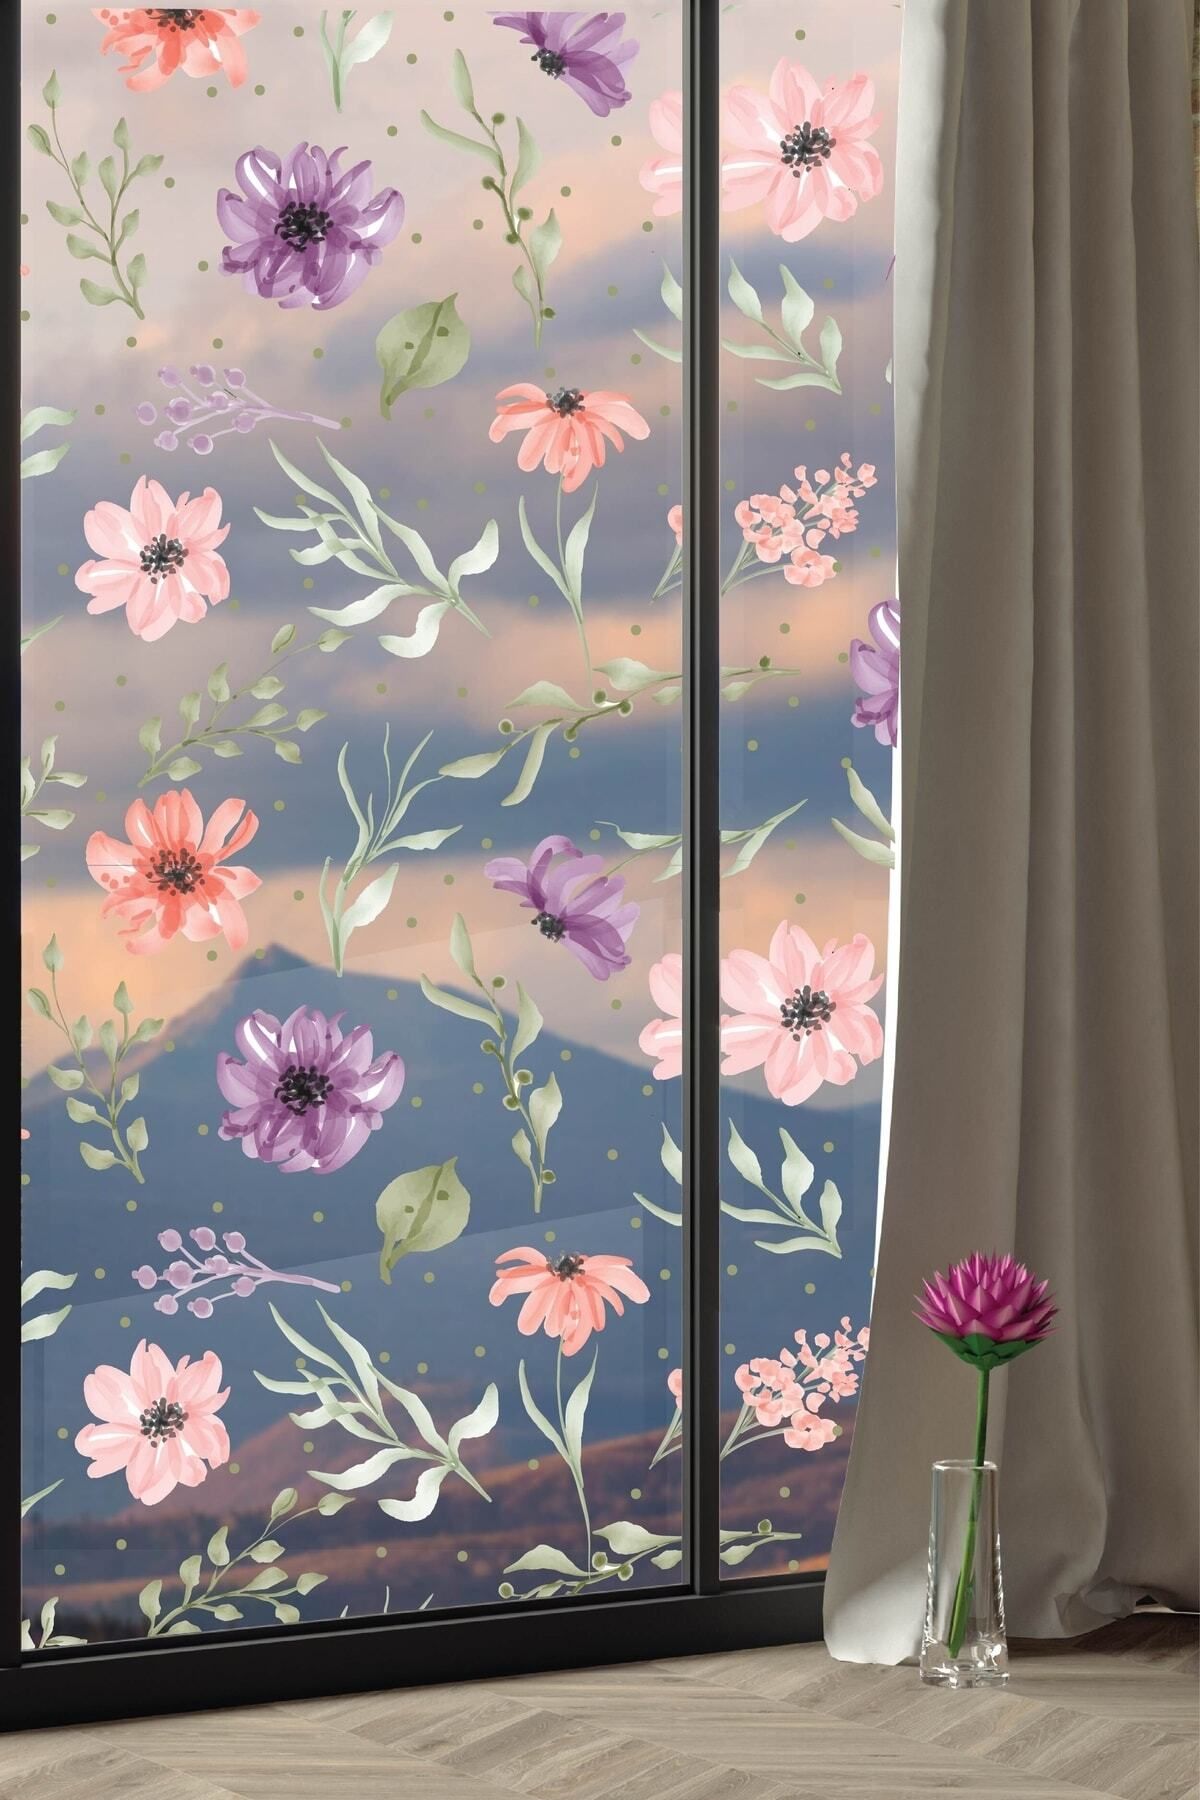 212shop Çiçek Ve Yapraklar Dekoratif Cam Ayna Duvar Dekoru Sticker Seti